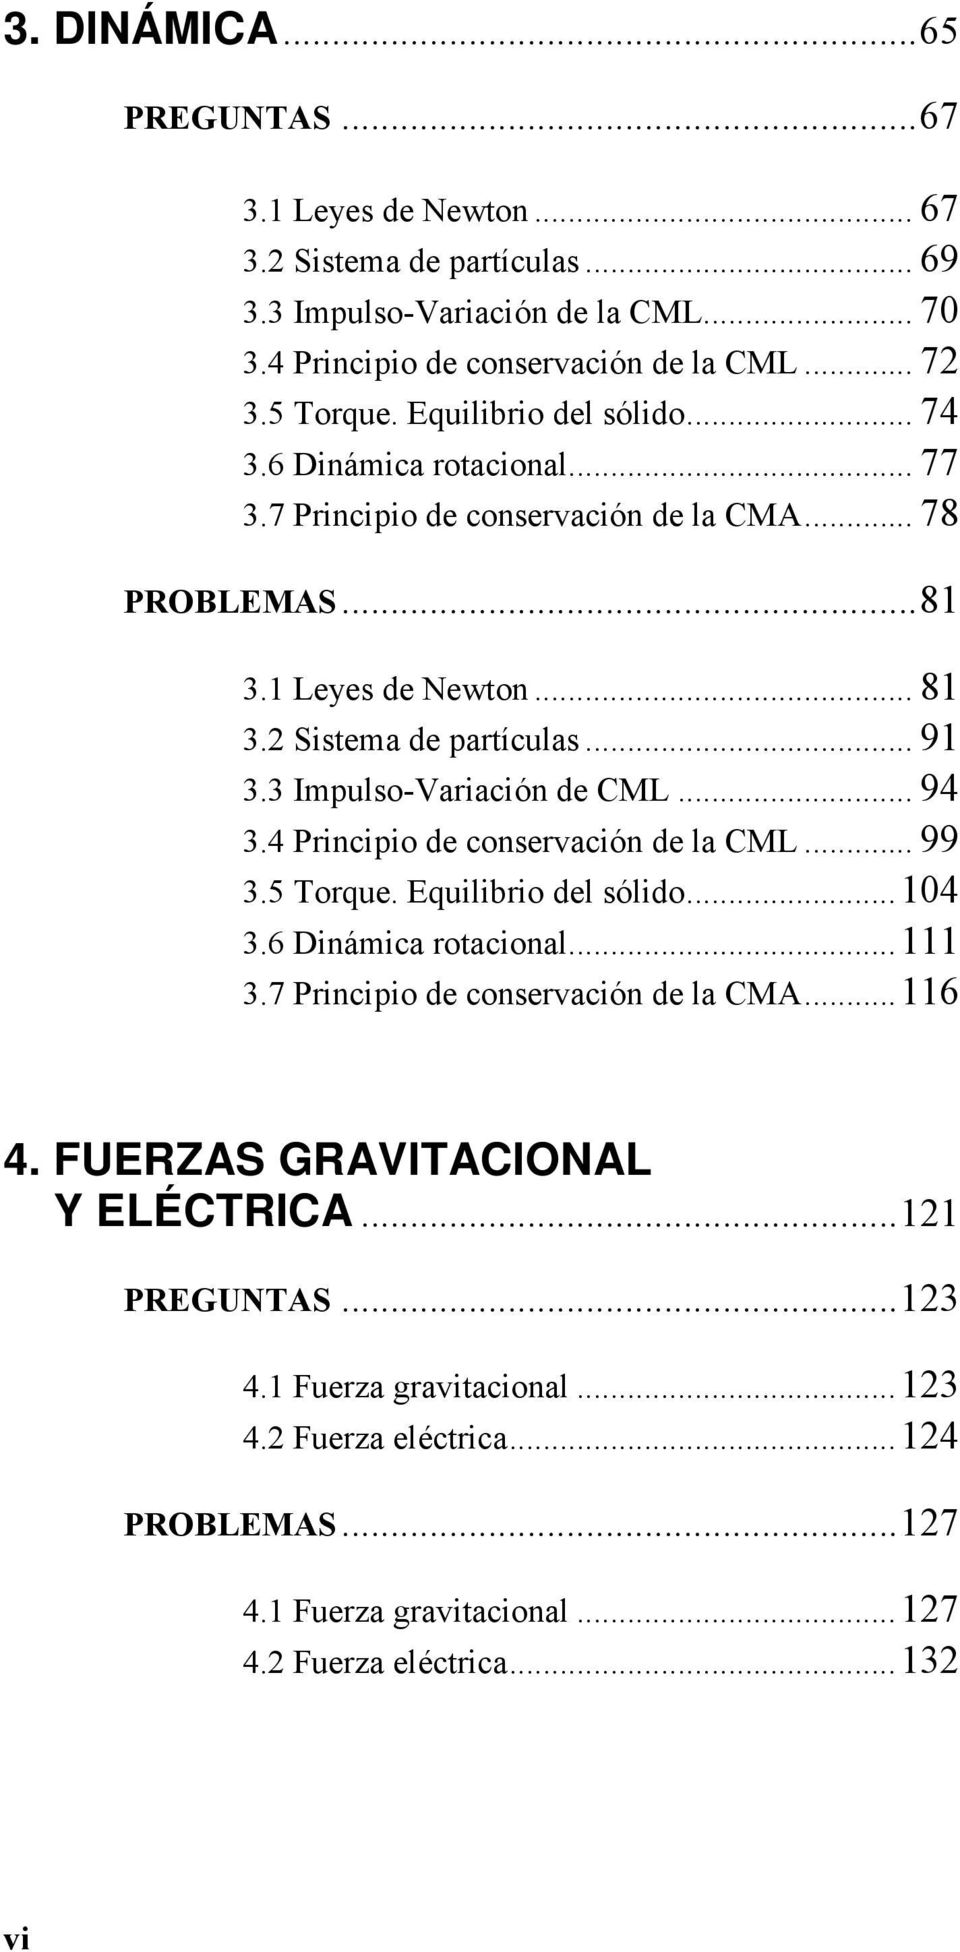 3 Impulso-Variación de CML... 94 3.4 Principio de conservación de la CML... 99 3.5 Torque. Equilibrio del sólido... 104 3.6 Dinámica rotacional... 111 3.7 Principio de conservación de la CMA.